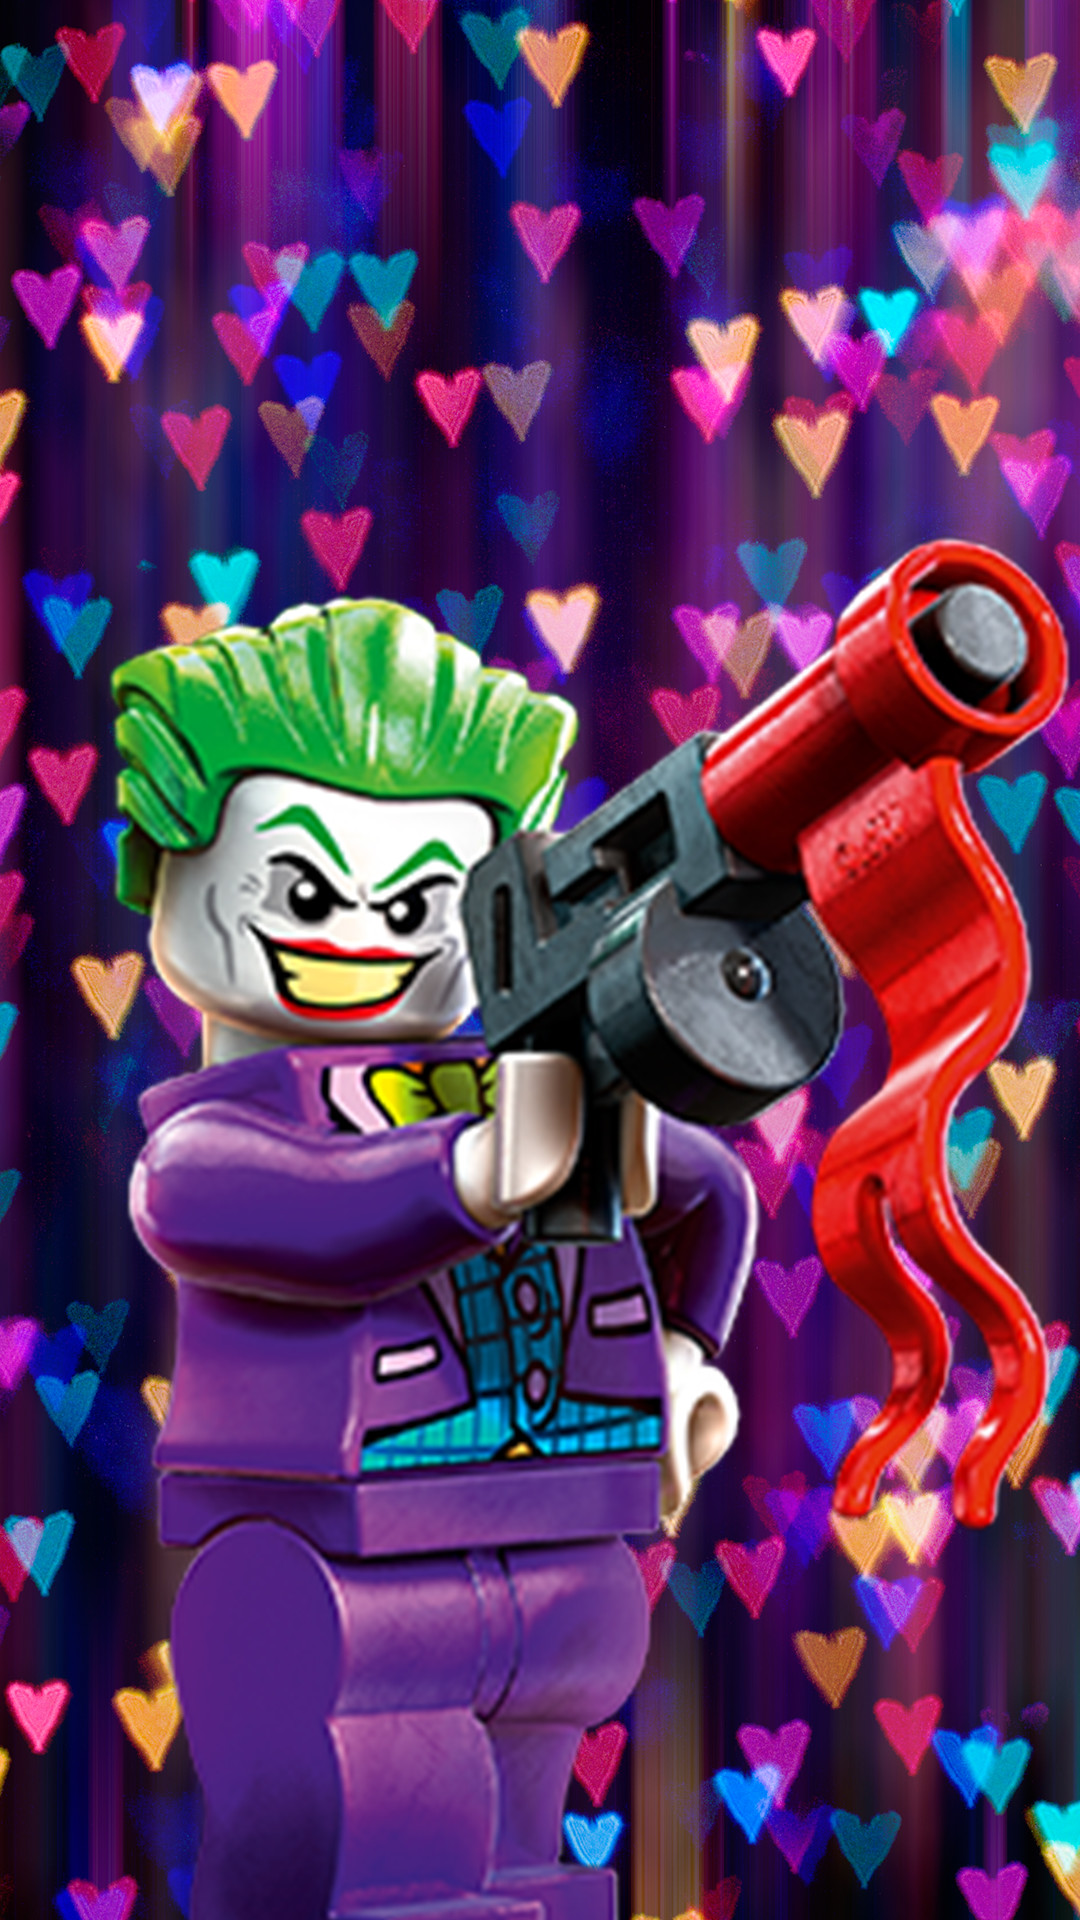 lego ninjago wallpapers joker dc villains super dimensions blocks valentine resolution villians getwallpapers